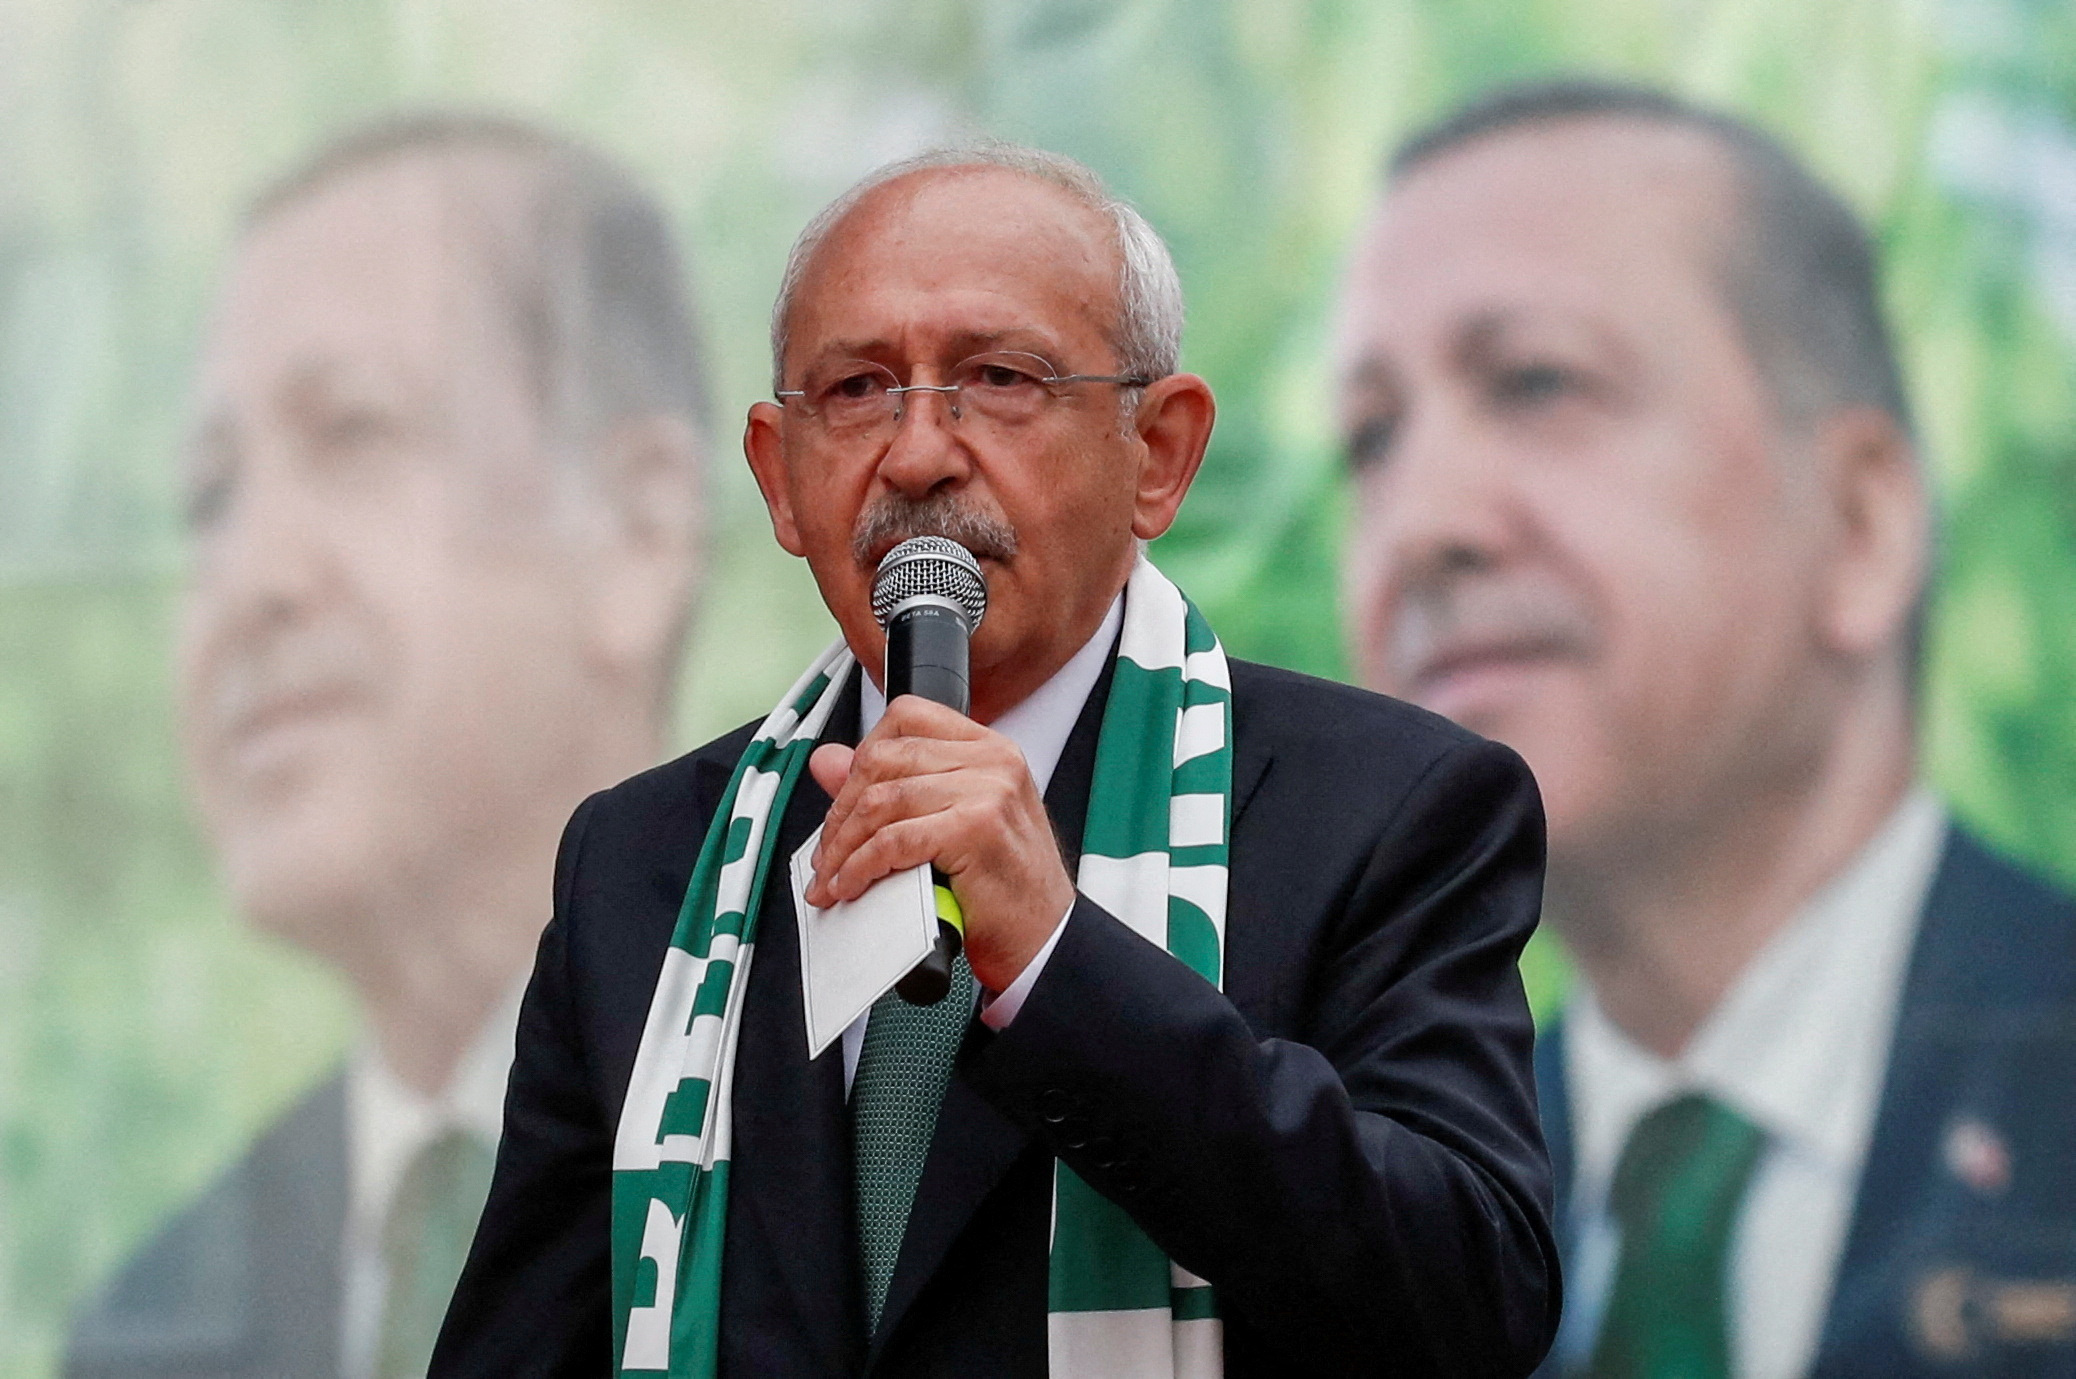 Εκλογές στην Τουρκία: Πώς ολοκλήρωσαν τις καμπάνιες τους Ερντογάν και Κιλιτσντάρογλου